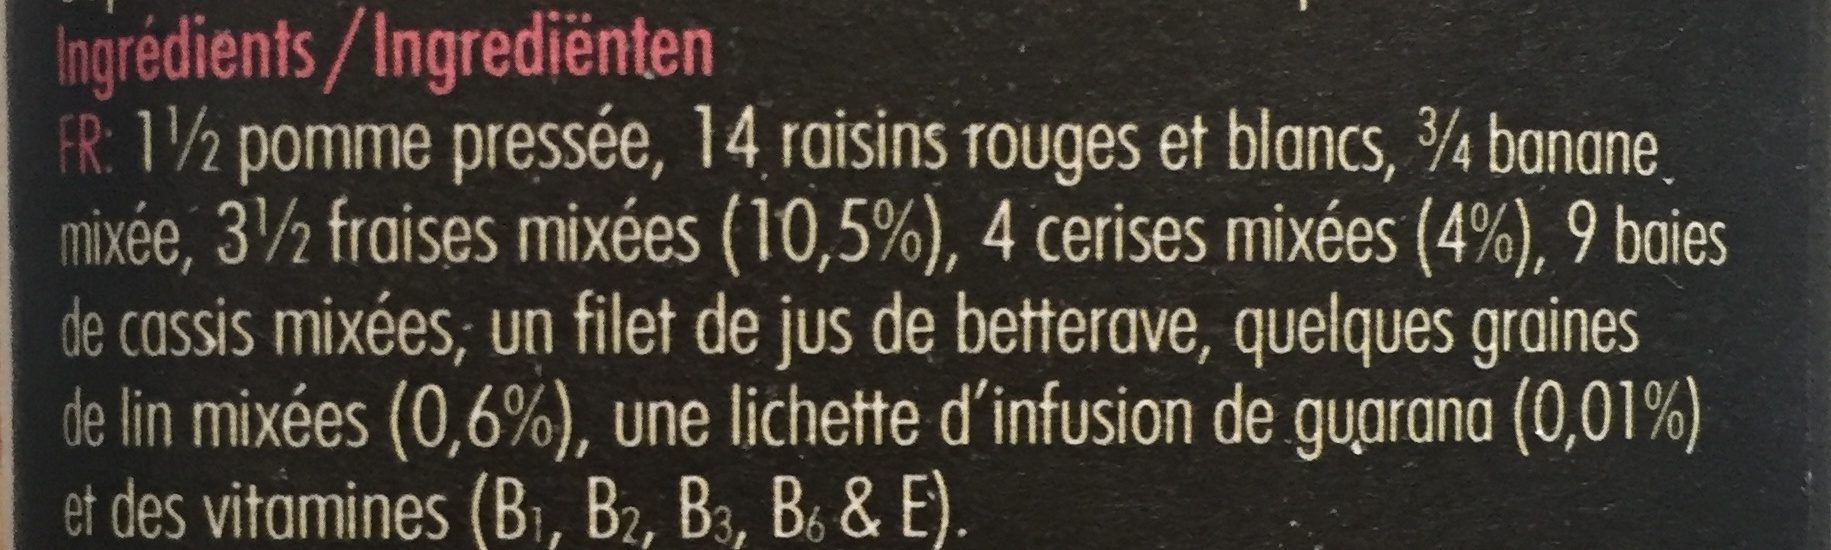 Innocent - Ingrediënten - fr